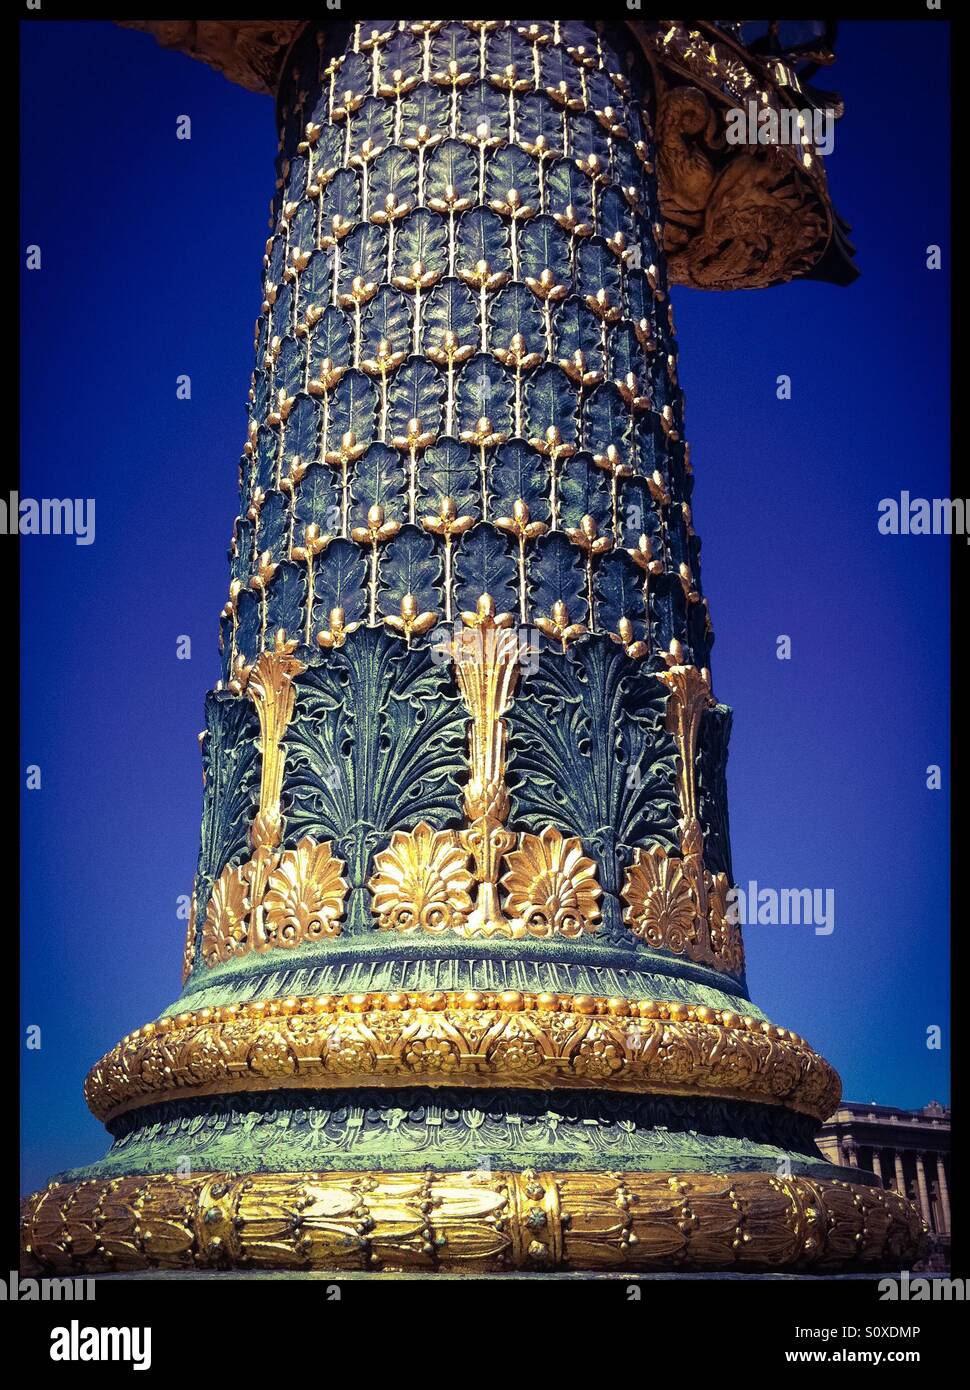 Decorative column. Place de la Concorde, Paris. France Stock Photo